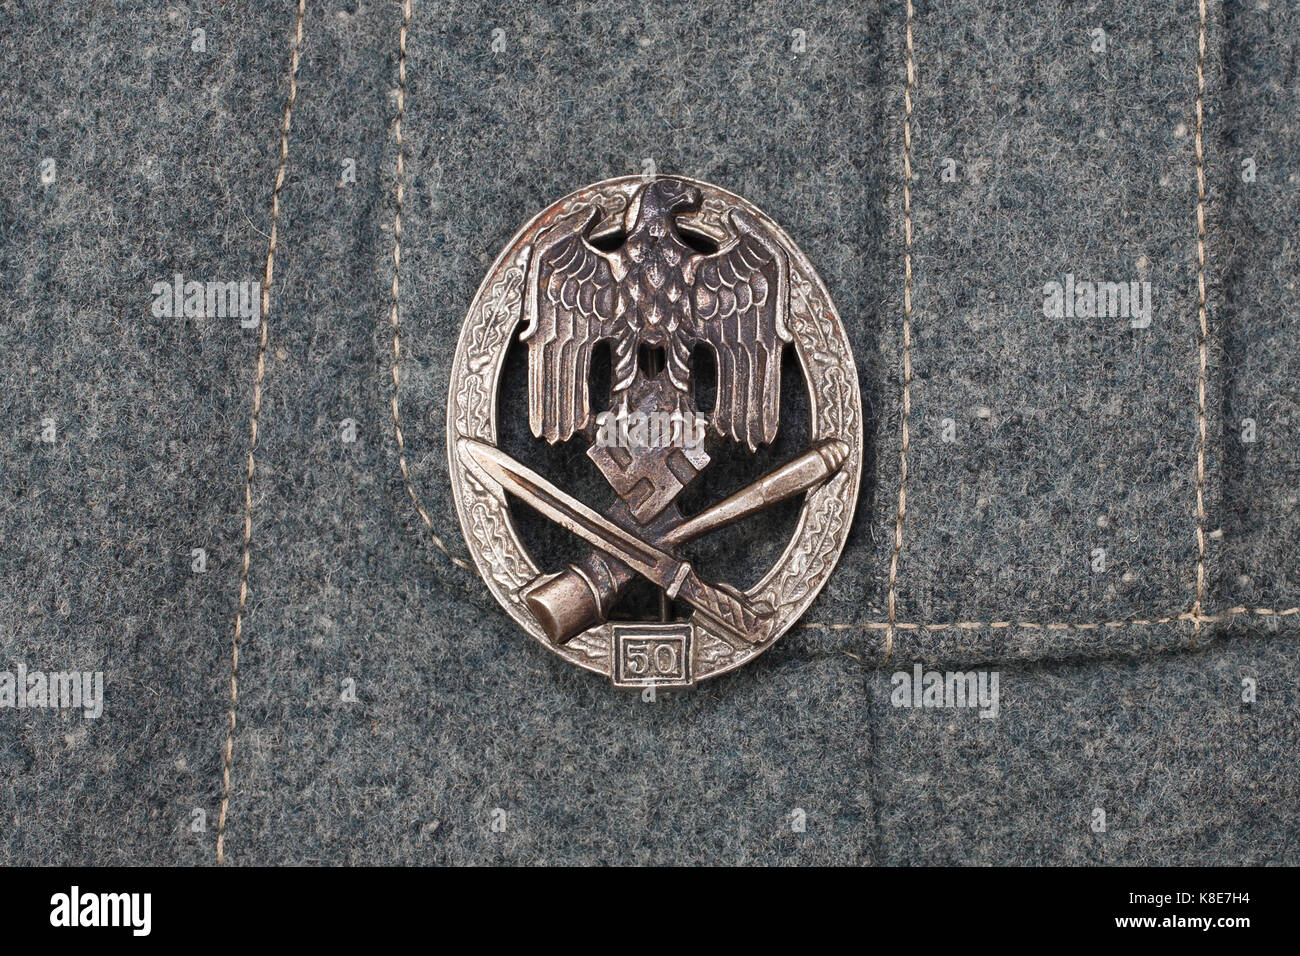 Voies de fait d'un insigne nazi allemand - award on uniform Banque D'Images